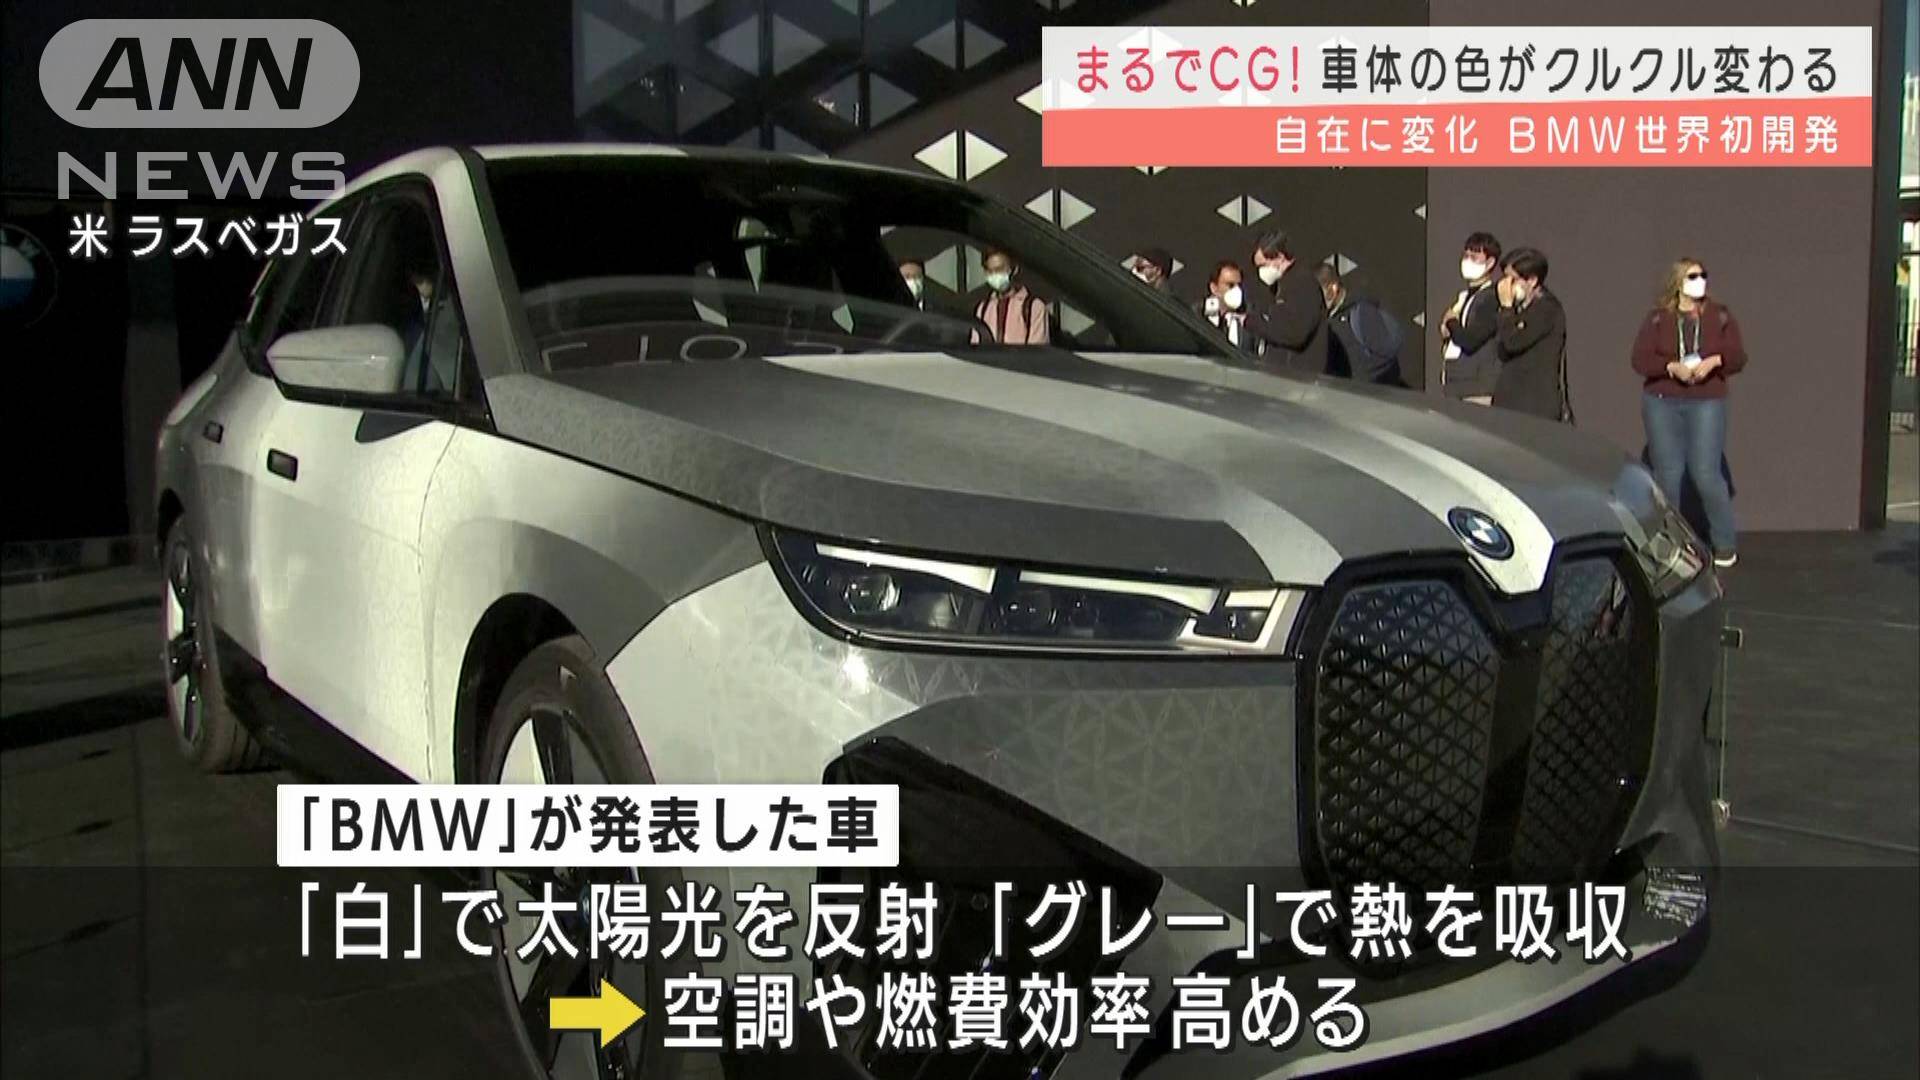 まるでcg 世界初 車体の色がクルクル変わるbmw テレ朝news テレビ朝日のニュースサイト